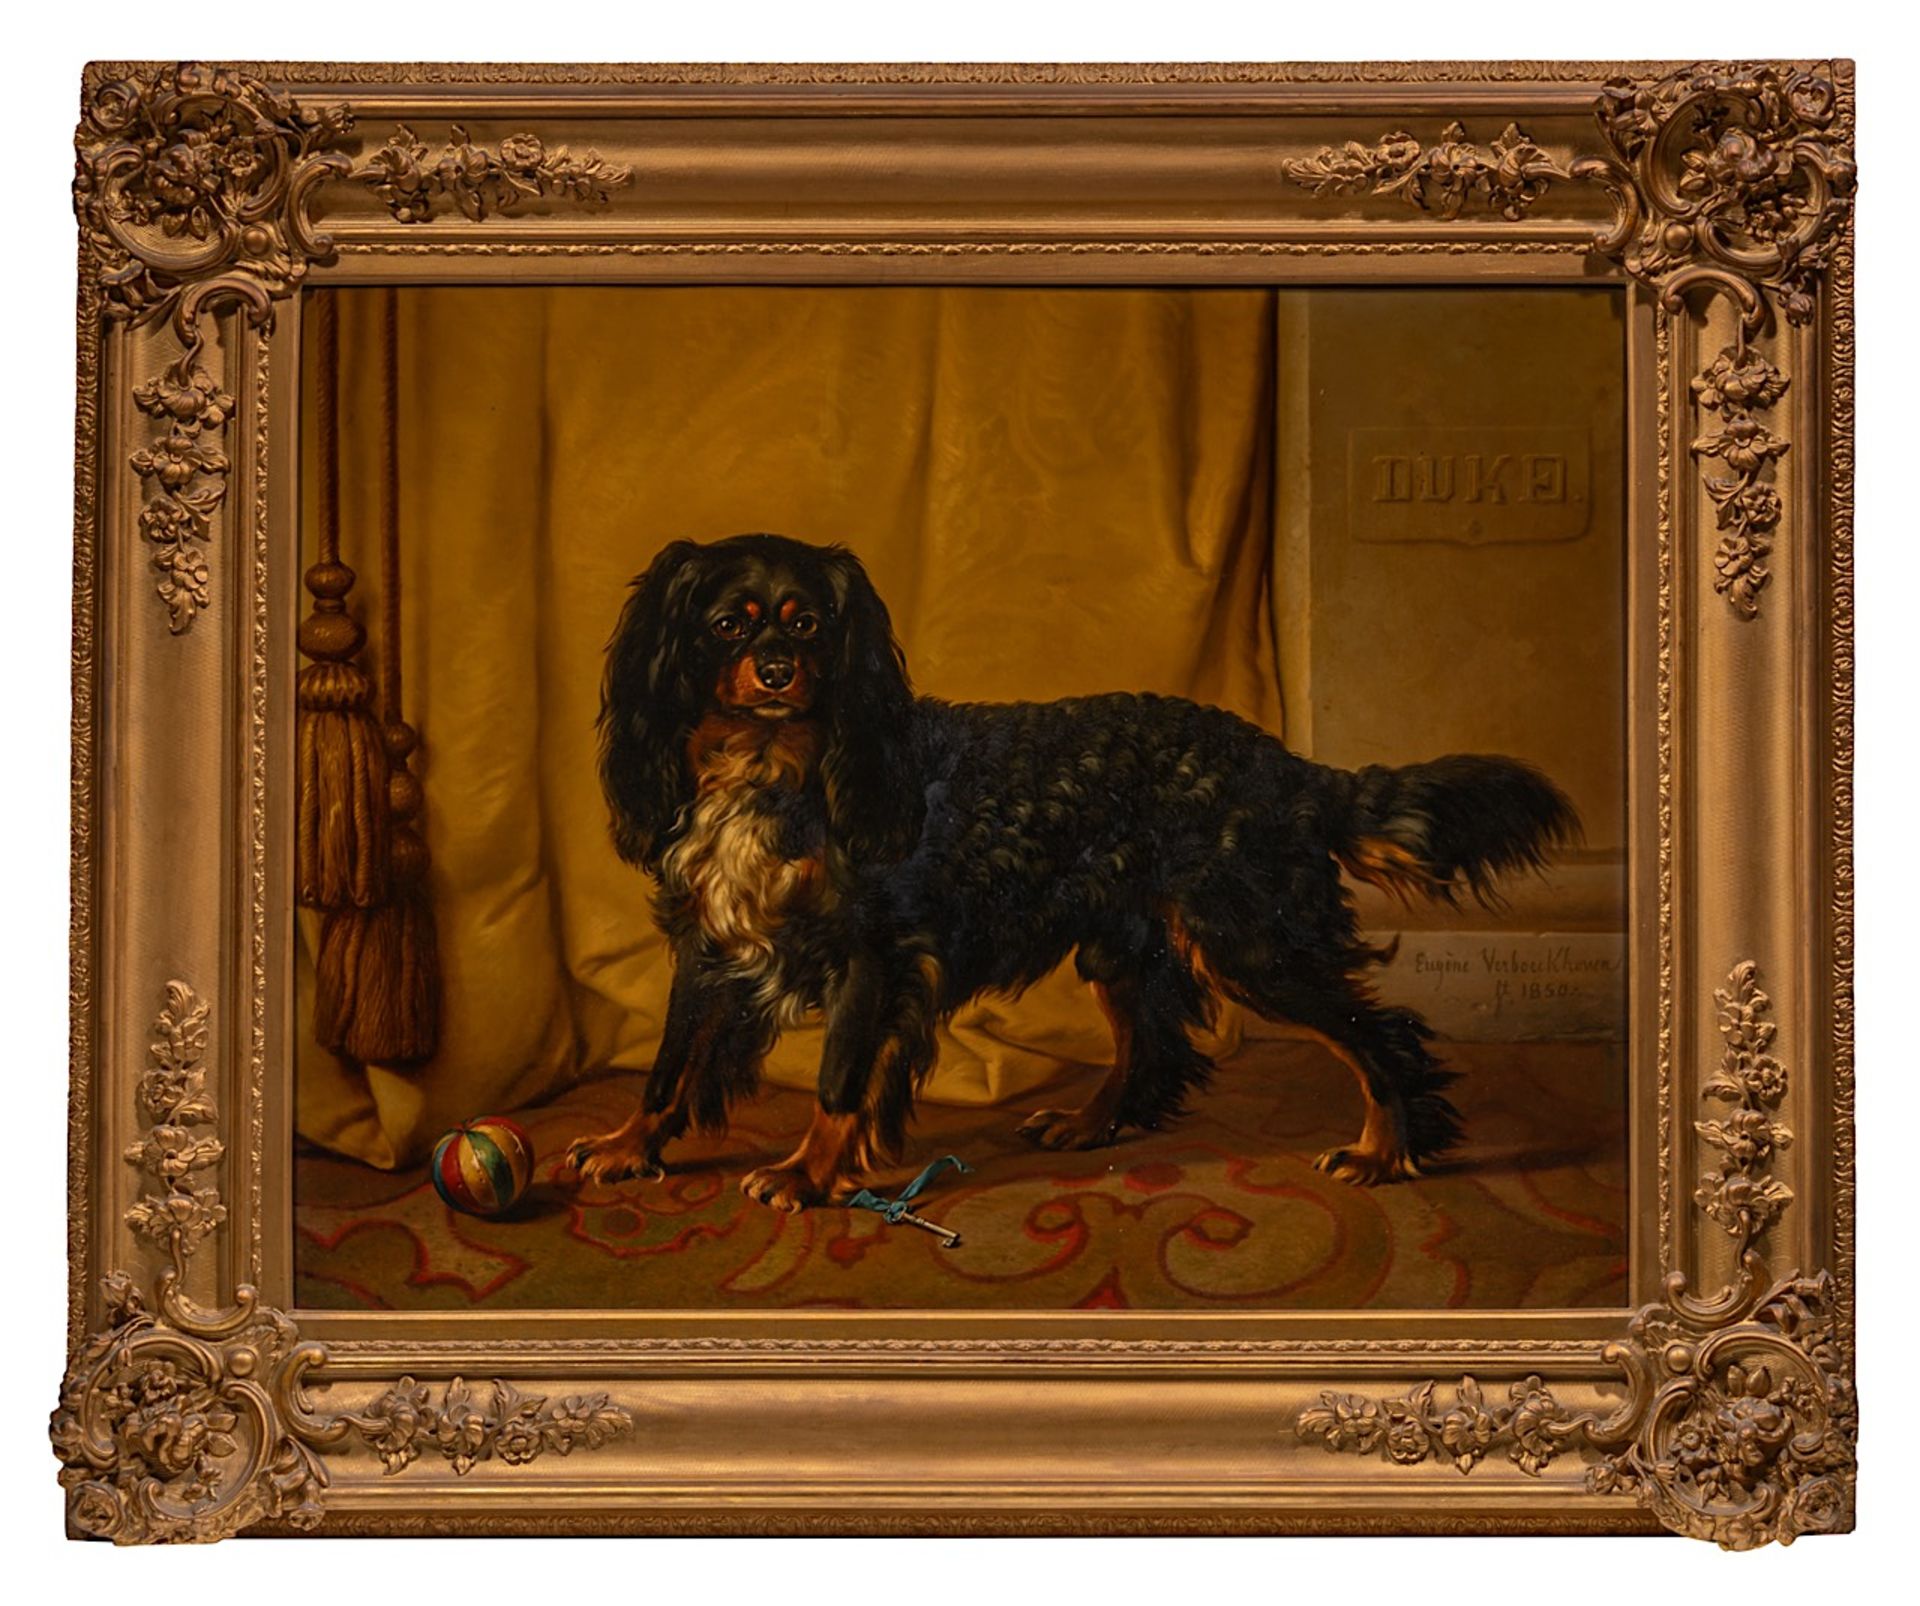 Eugene Verboeckhoven (1798/99-1881), A King Charles cavalier spaniel named Duke, 1850, oil on mahoga - Bild 2 aus 7